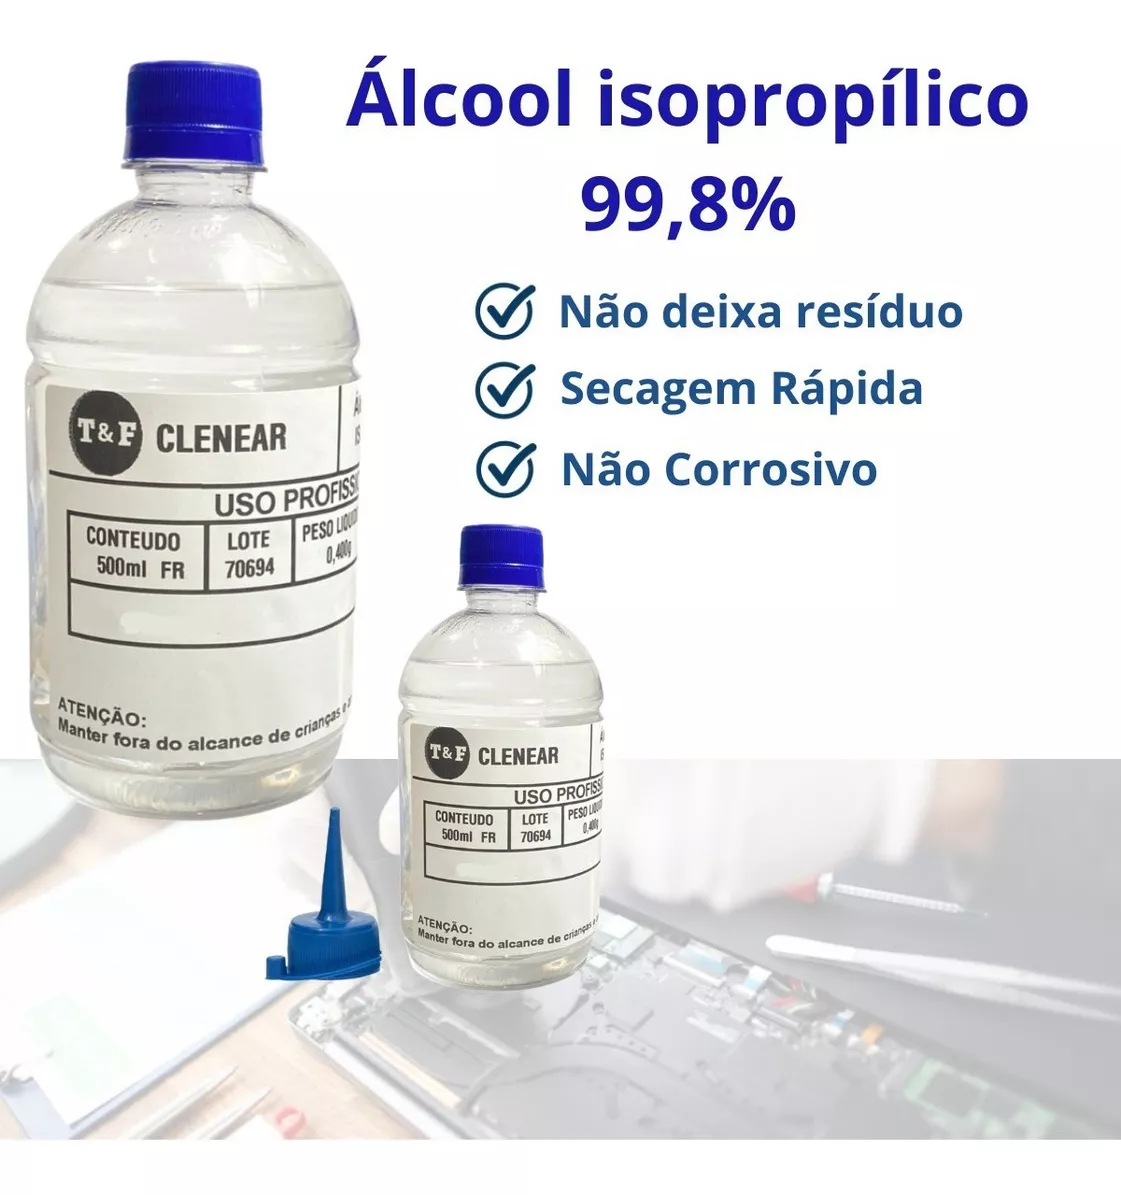 Terceira imagem para pesquisa de álcool isopropílico